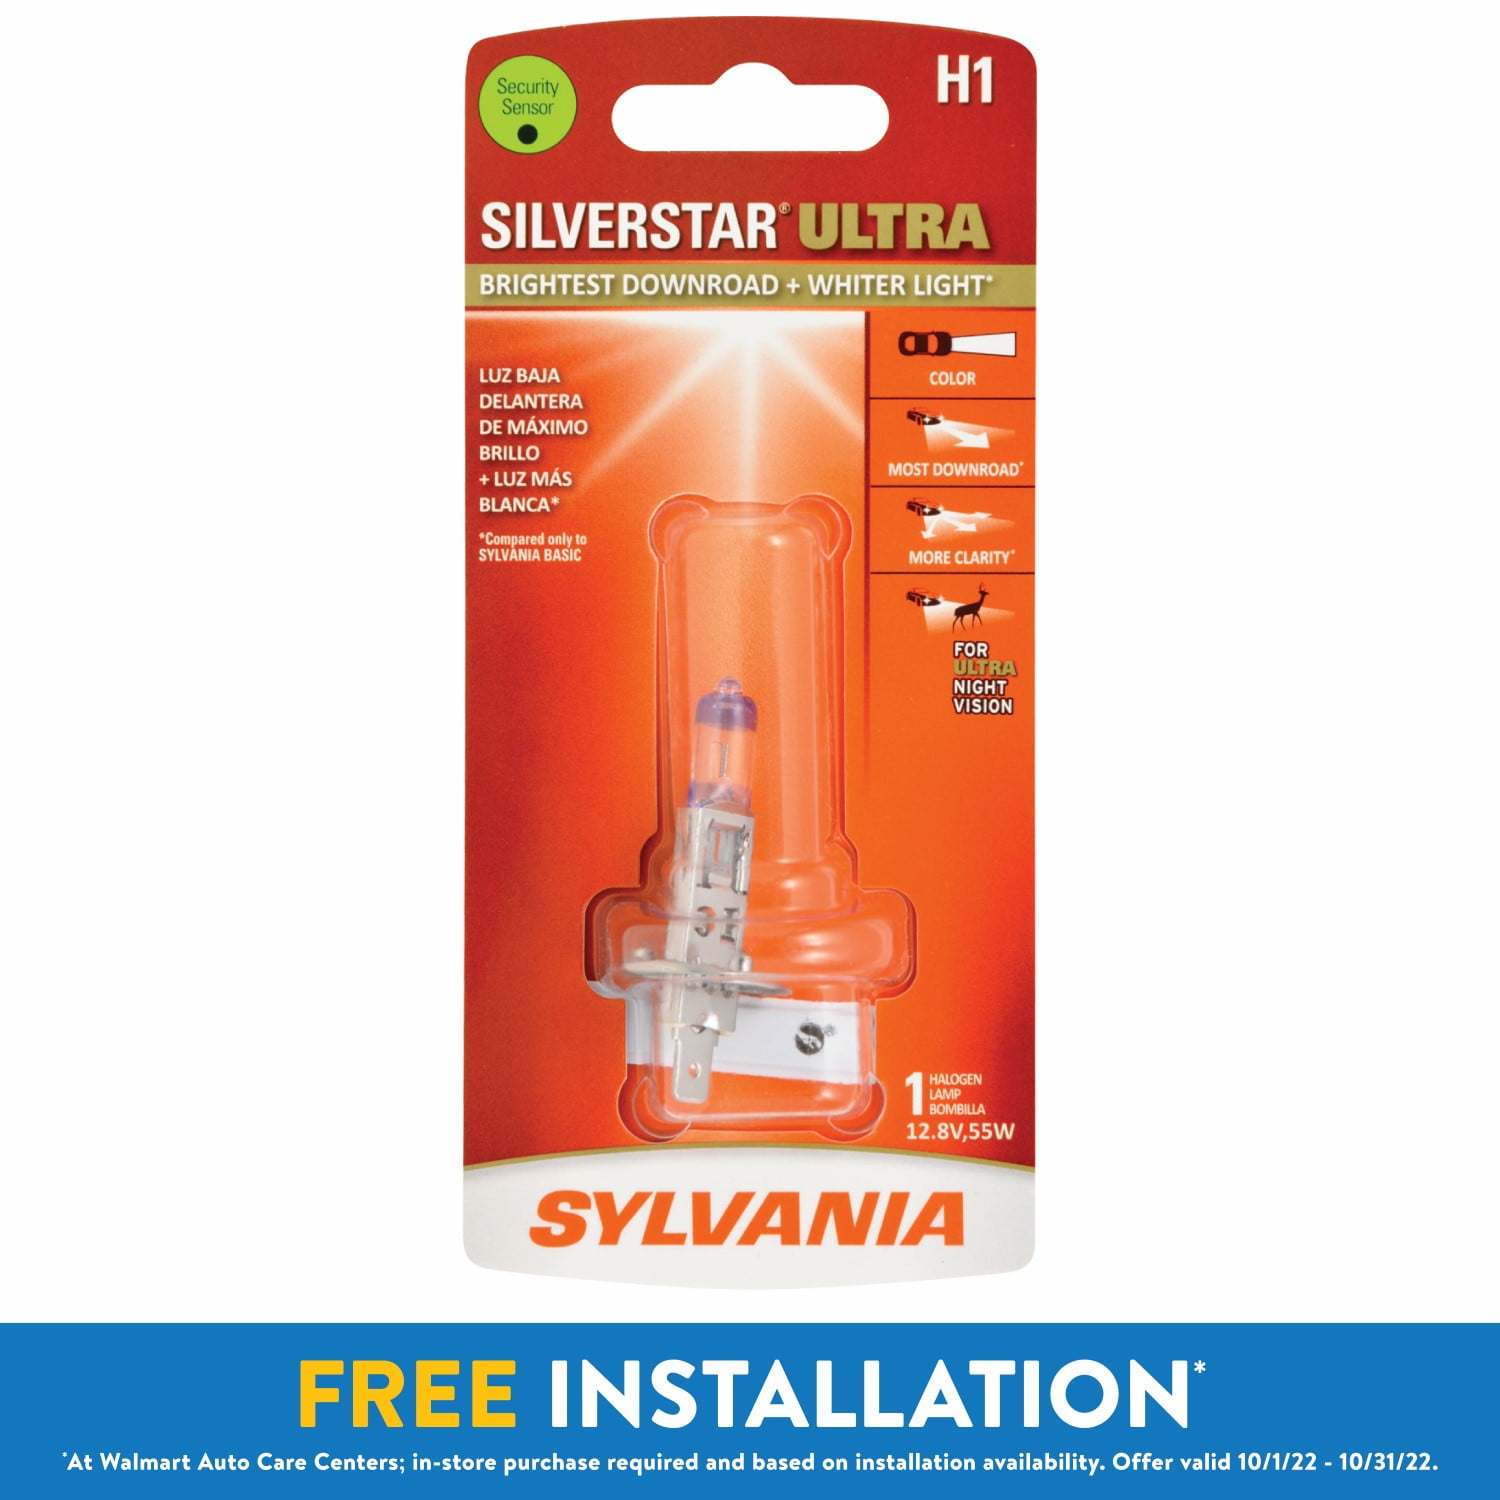 Contains 1 Bulb SYLVANIA H1 Basic Halogen Headlight Bulb, 